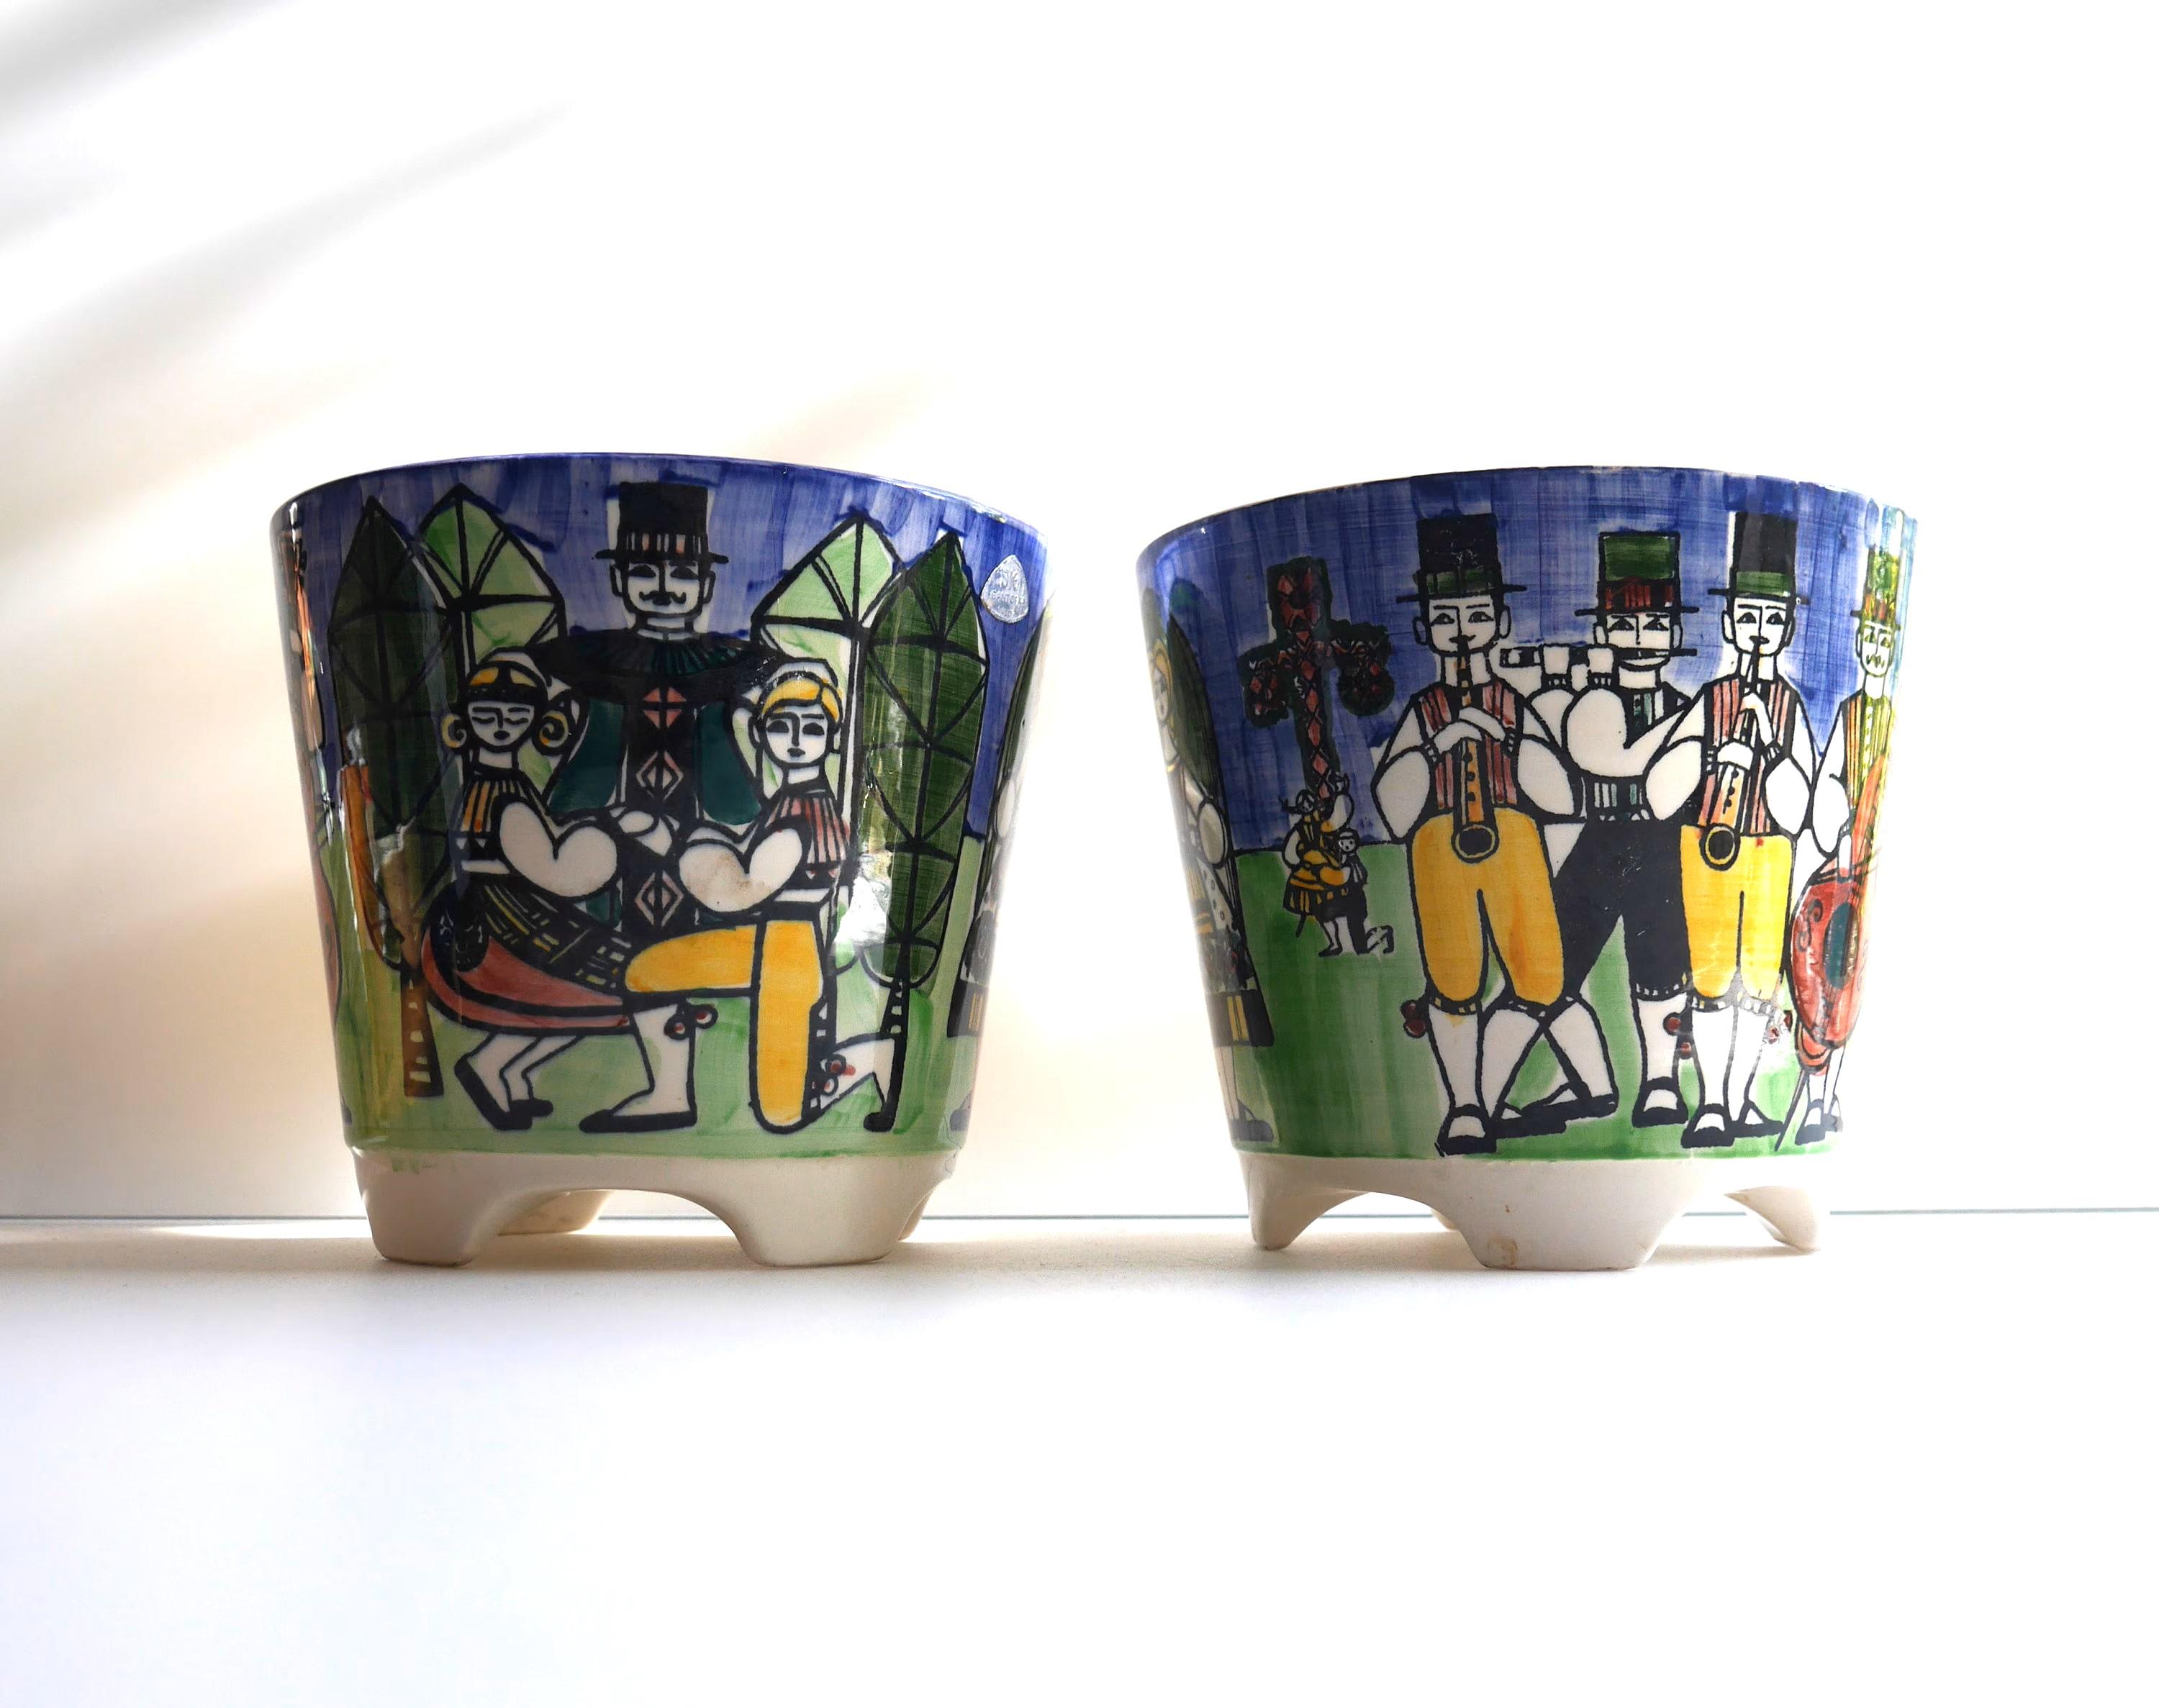 Ein Paar sehr schöne handbemalte Vintage-Porzellan-Blumentöpfe, hergestellt von Anita Nylund für JIE Keramik, Schweden. Diese Töpfe haben fantastische Farben, die einen traditionellen schwedischen Mittsommertanz darstellen. In verschiedenen Szenen